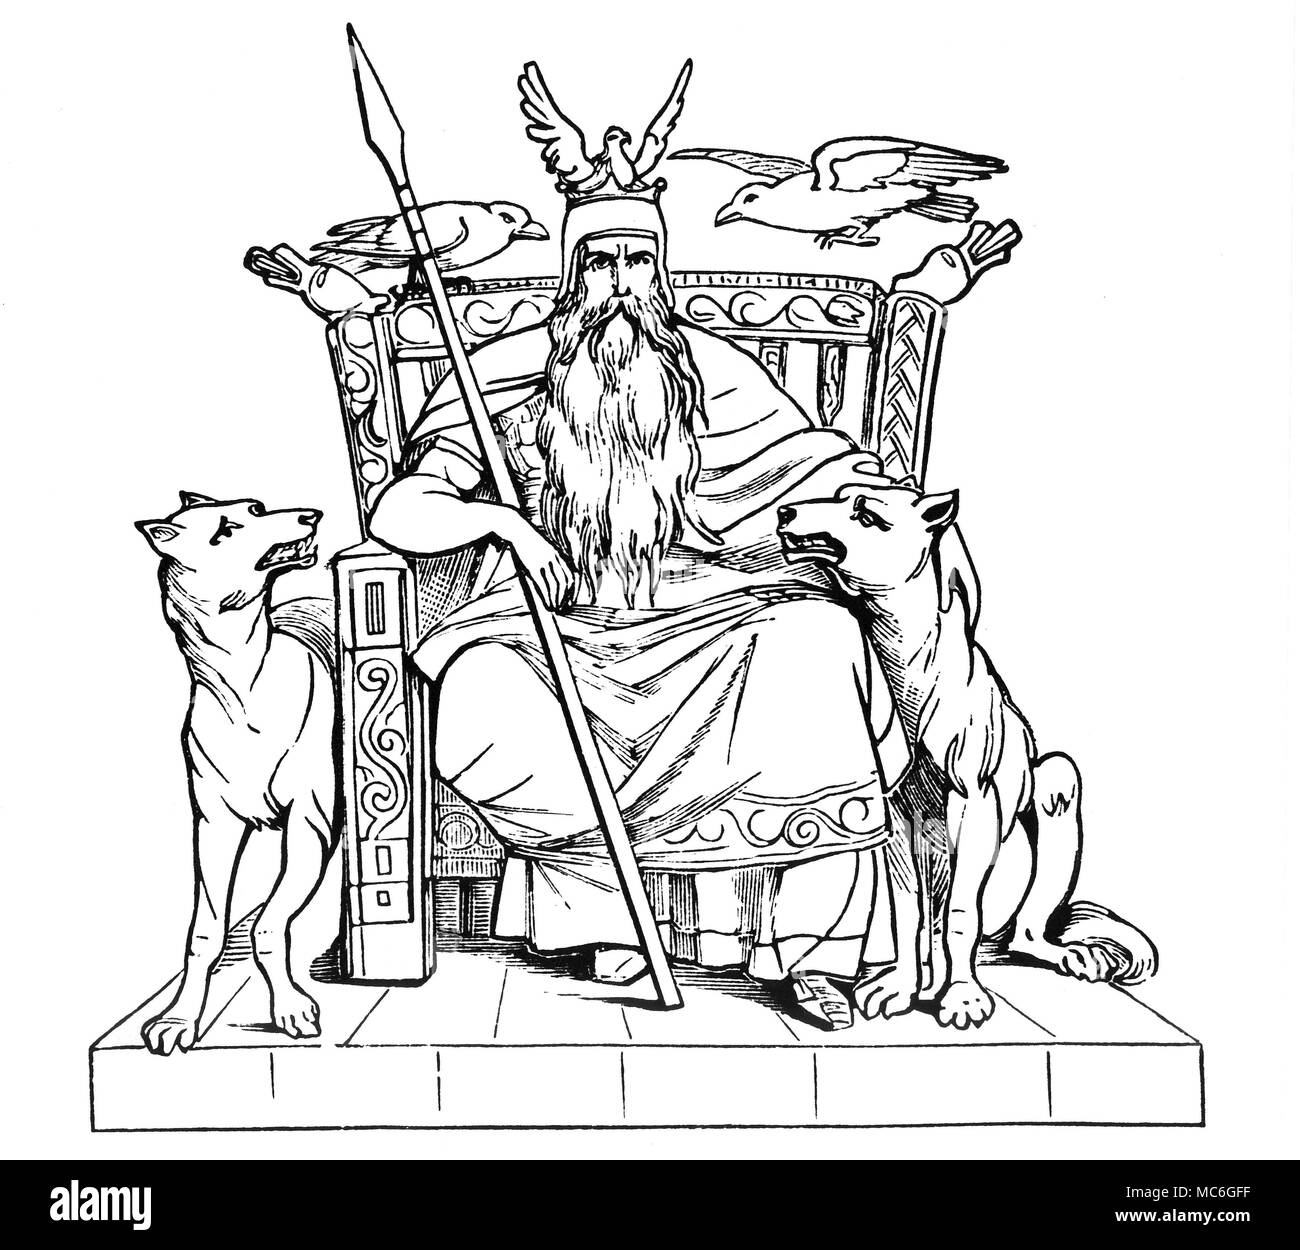 Germanische Mythologie - ODIN der Gott Odin mit seinen Geschöpfen, die uns  daran erinnert, dass er ursprünglich ein, er war das Oberhaupt der Raven  Clan. Odin war der Gott der Toten, für